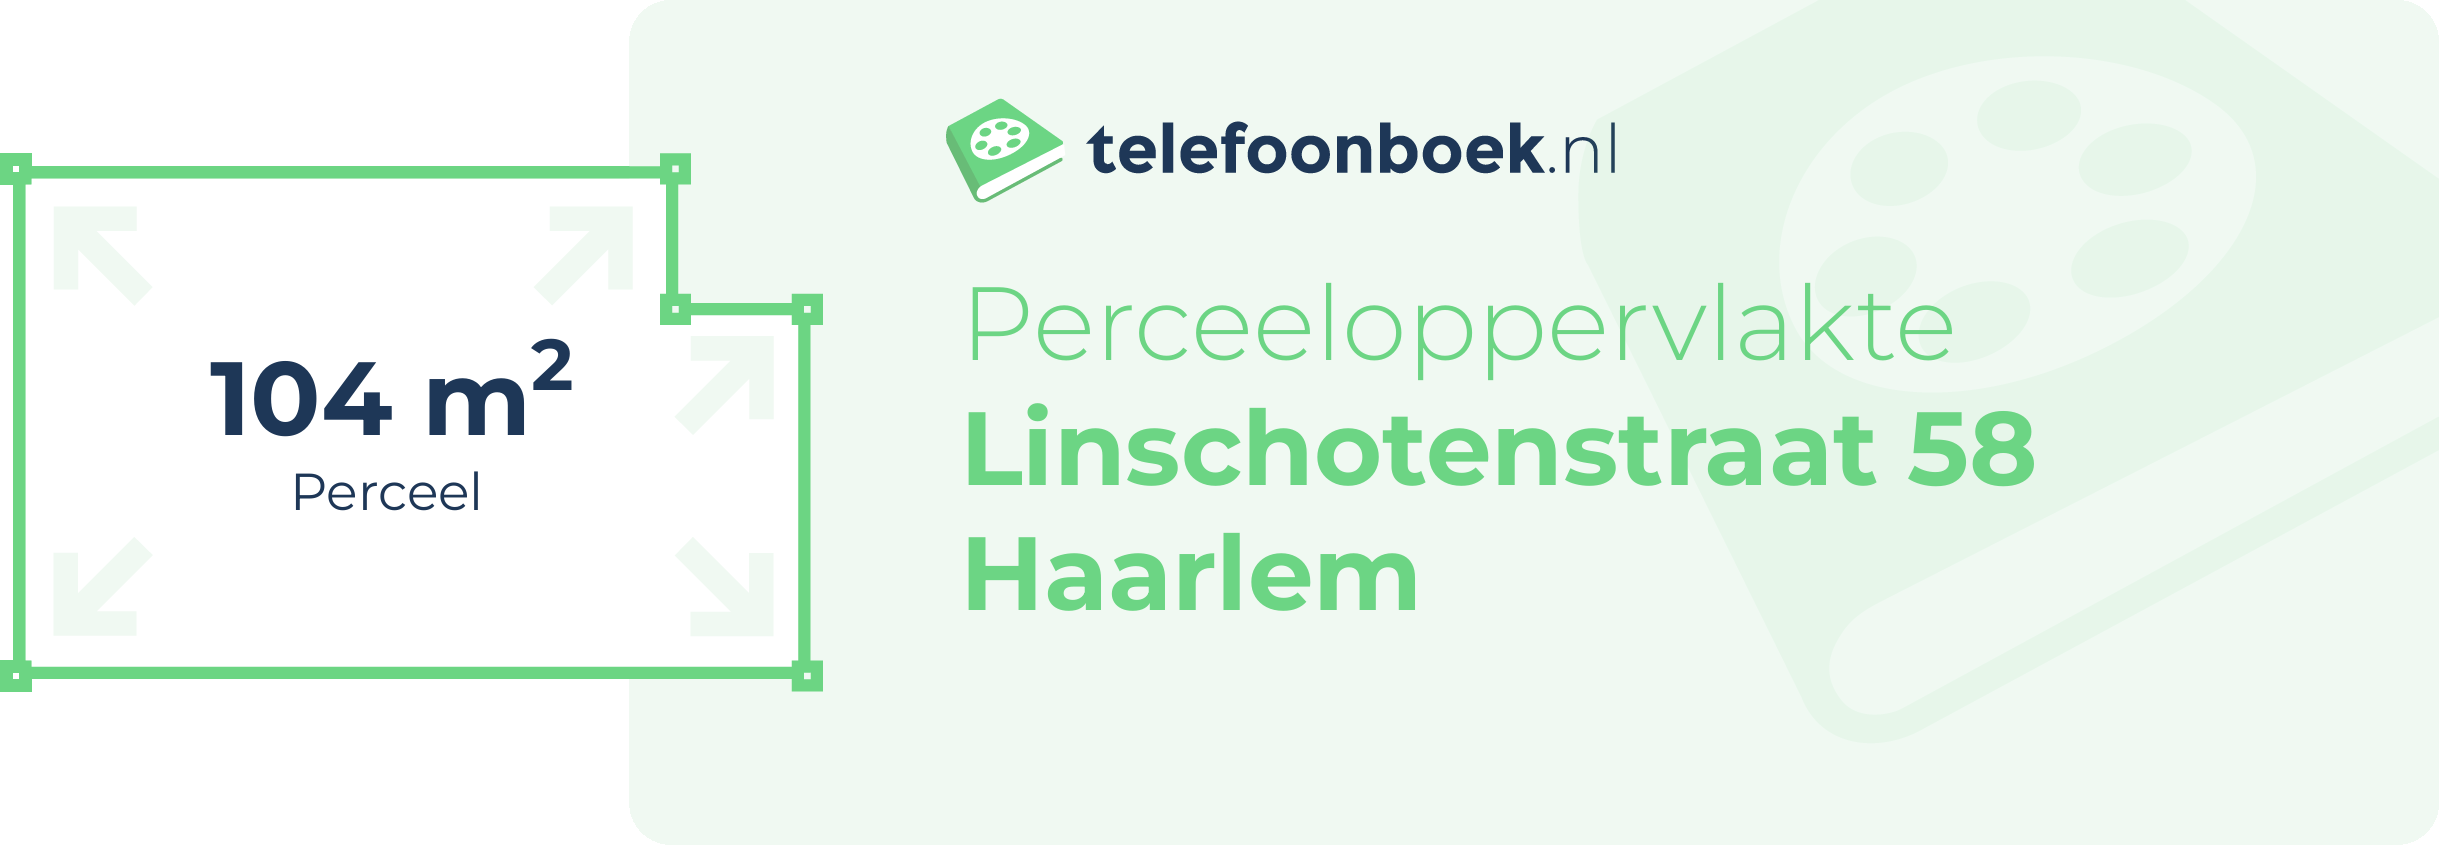 Perceeloppervlakte Linschotenstraat 58 Haarlem